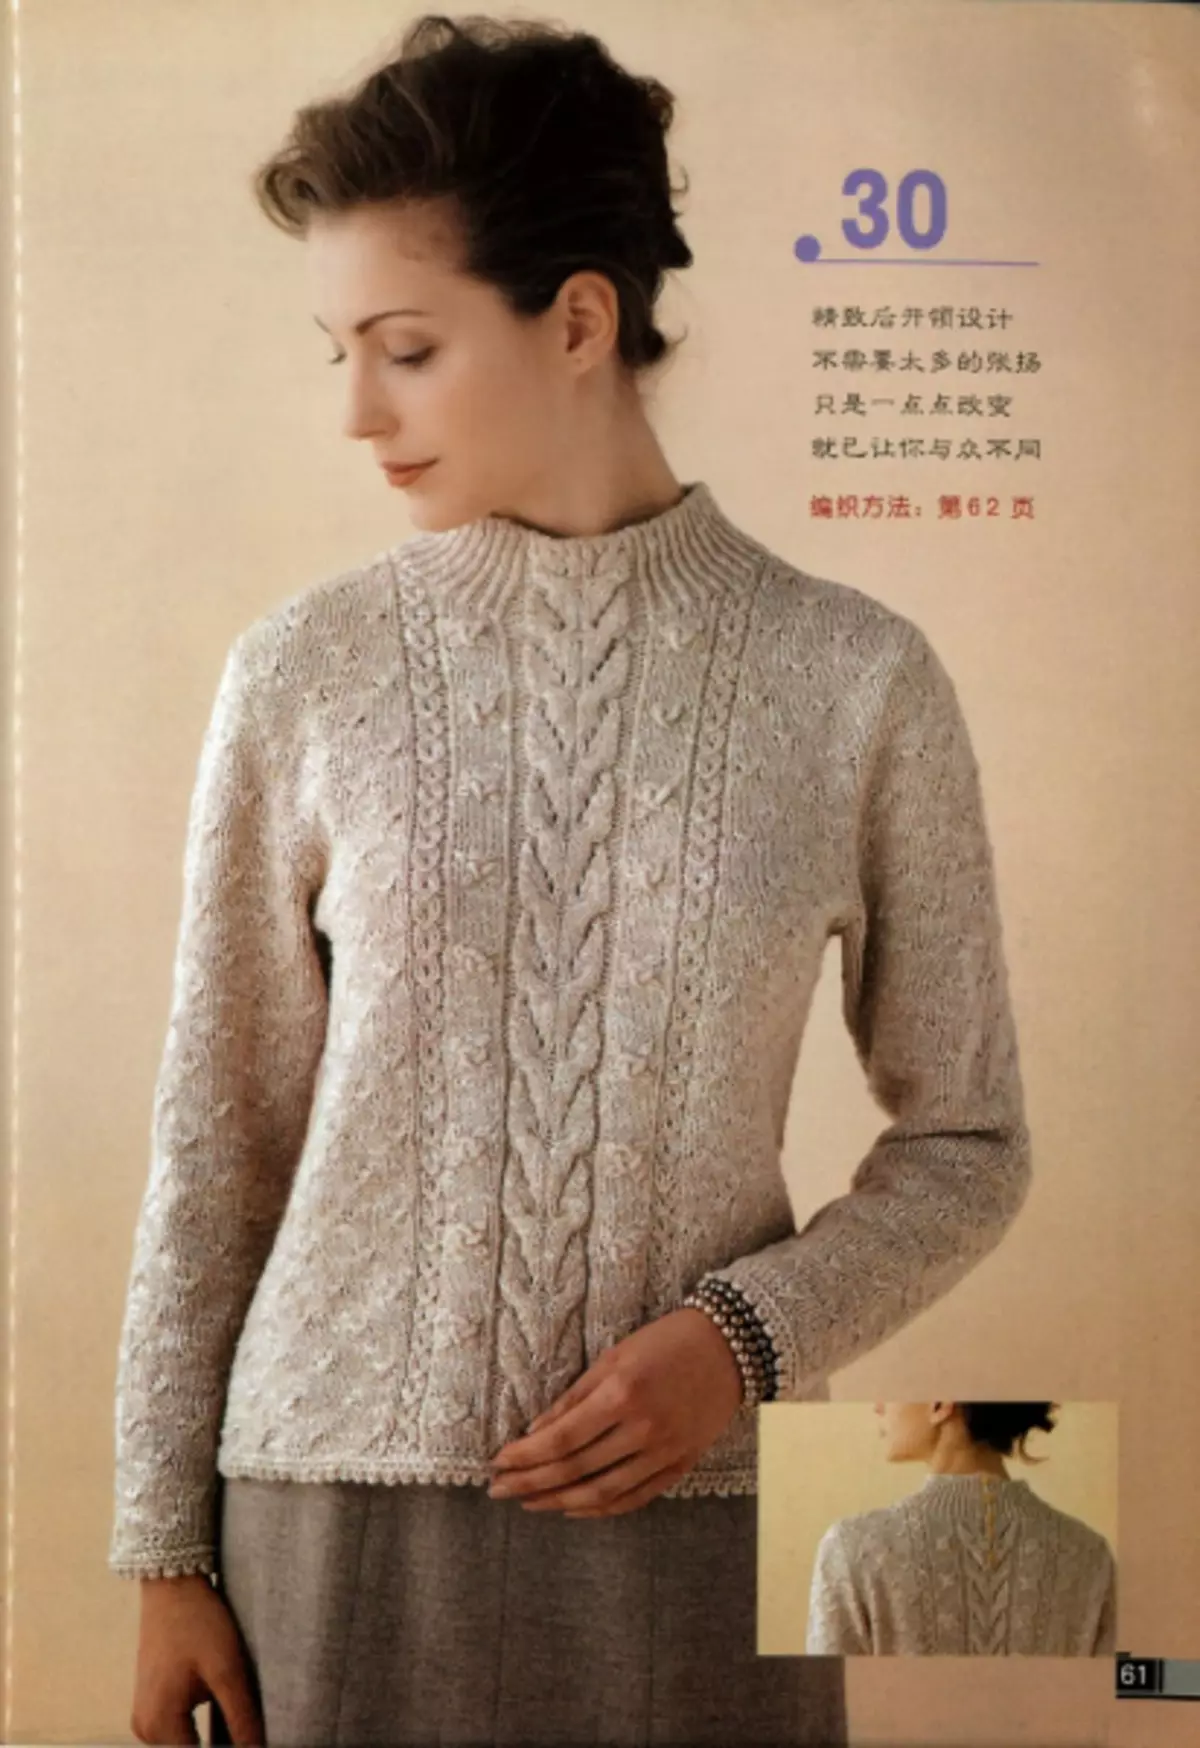 Naisten mallit neulomalla neulat. Magazine, jossa on järjestelmiä